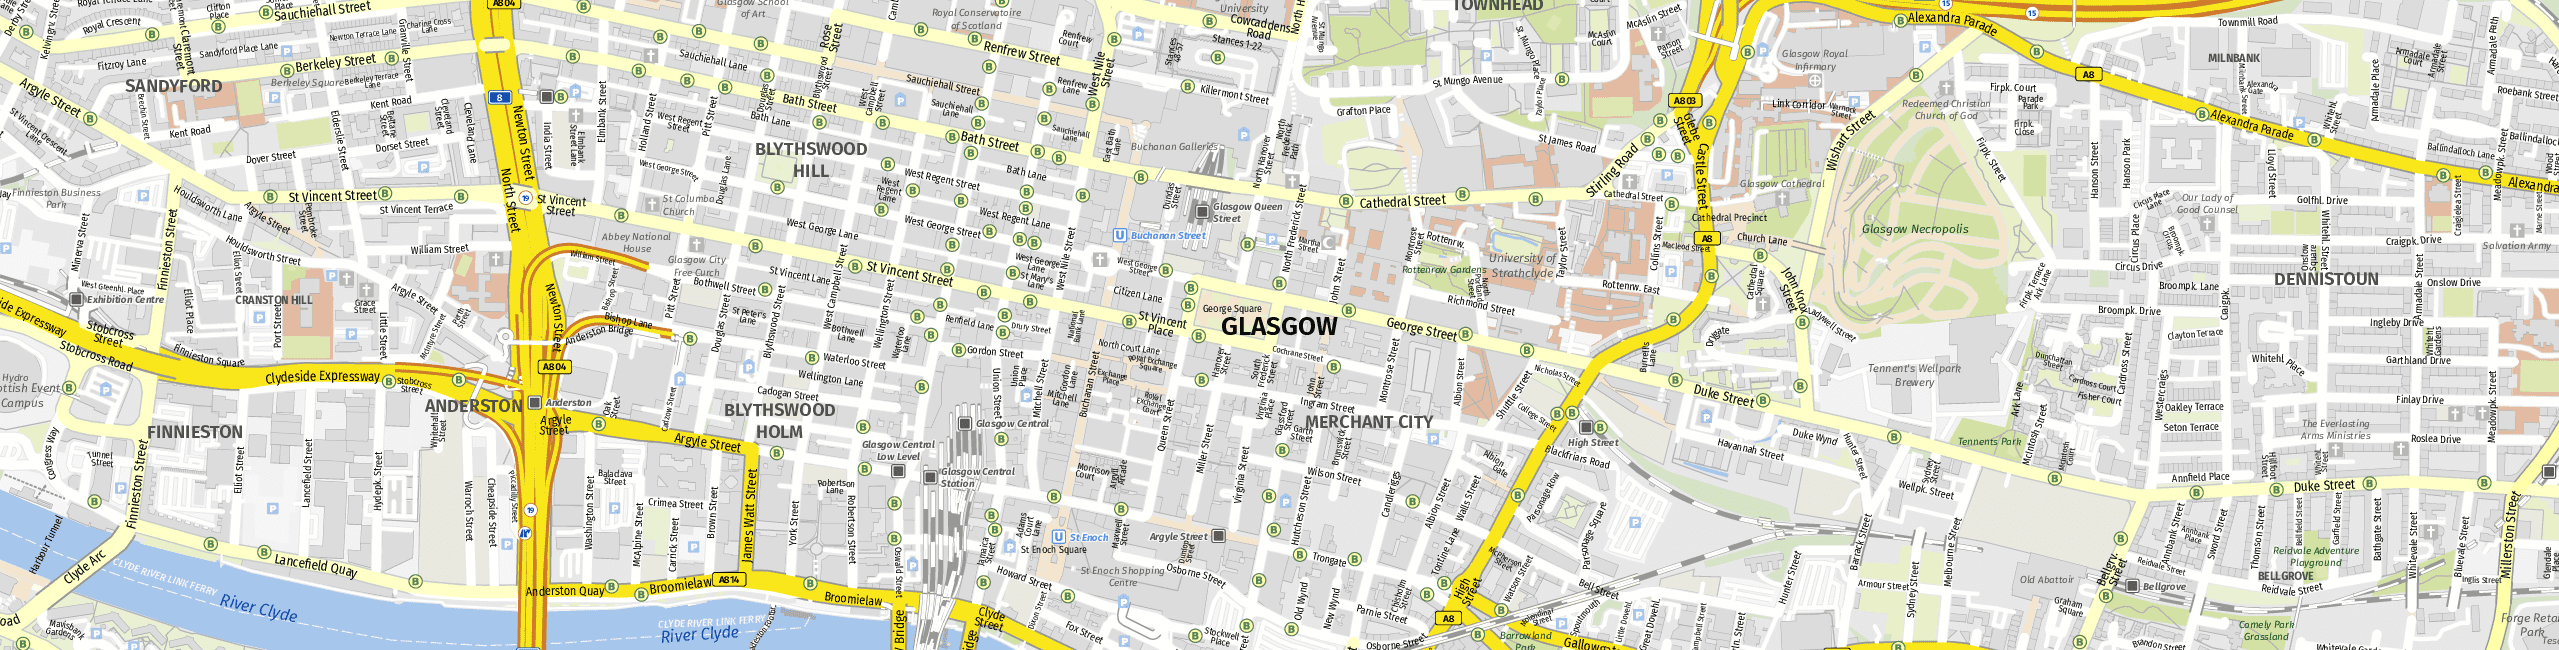 Stadtplan Glasgow zum Downloaden.